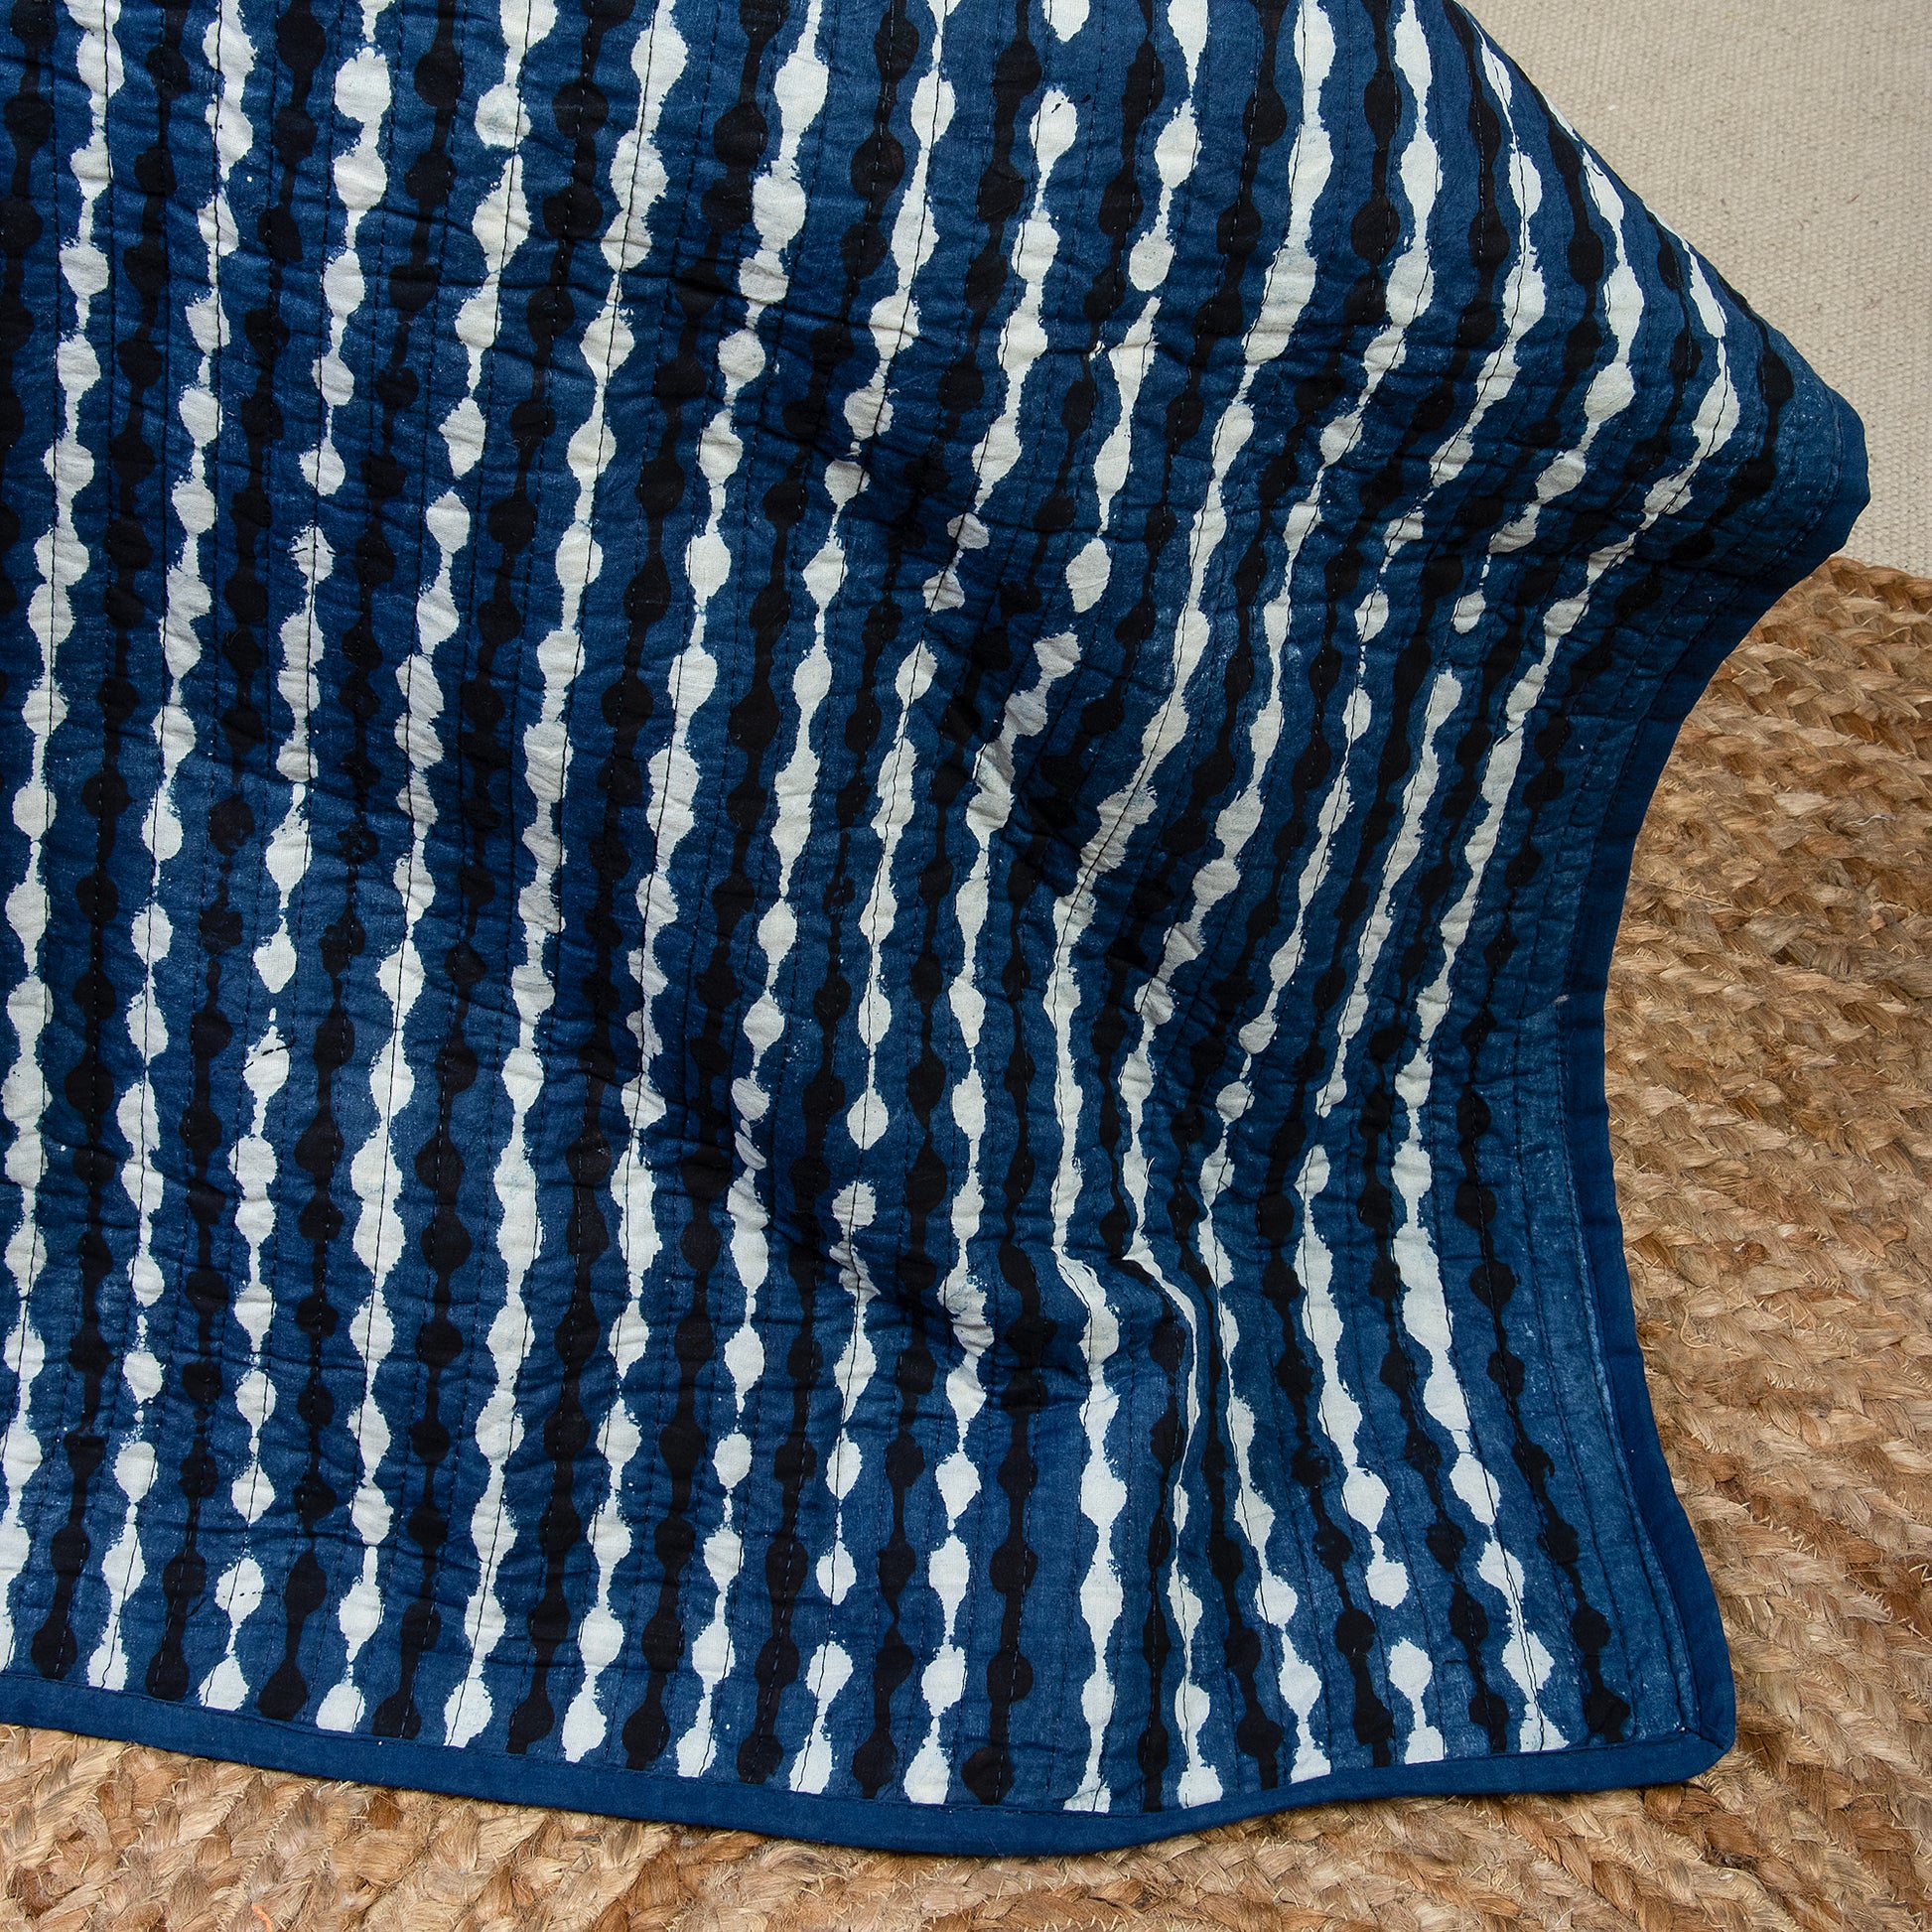 Indigo Blue Pure Cotton Machin Quilted Bedspreads Online